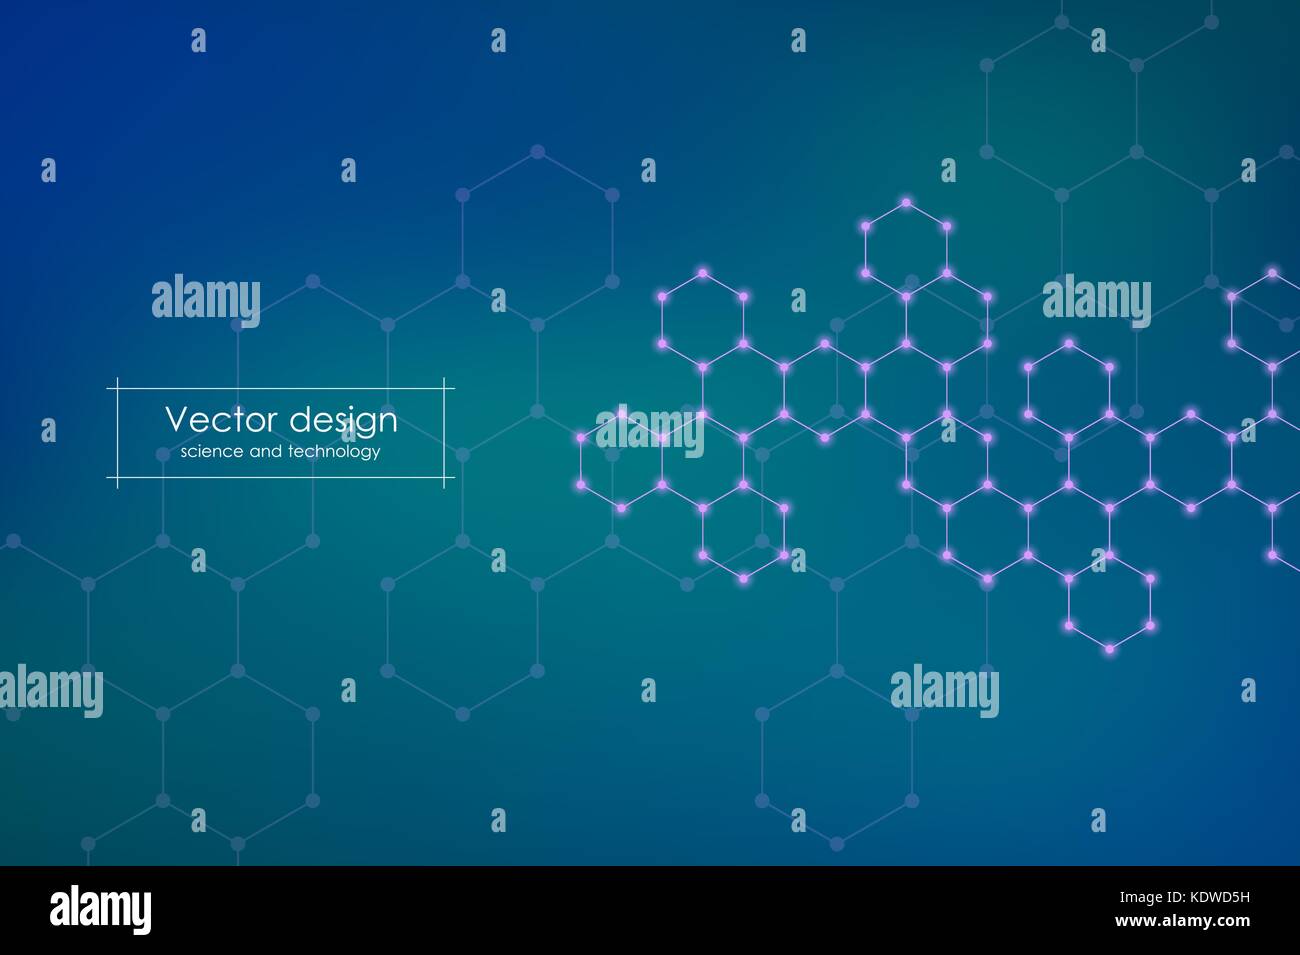 Abstrakte sechseckige Molekül Hintergrund, genetischen und chemischen Verbindungen, wissenschaftlichen oder technologischen Konzept Vector Illustration Stock Vektor